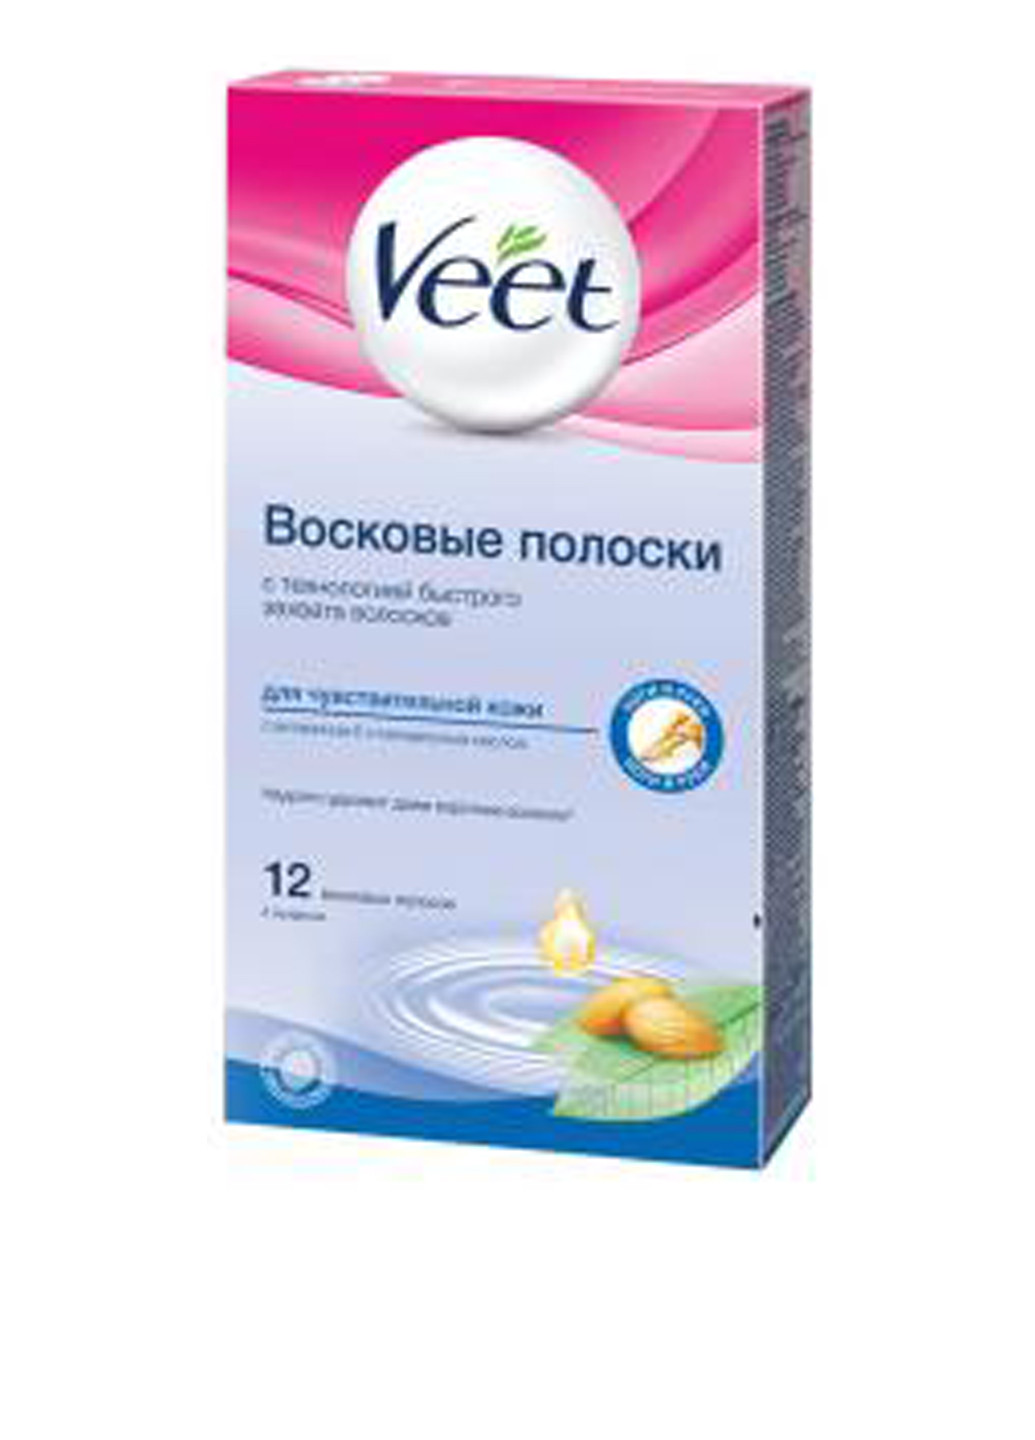 Восковые полоски для депиляции с витамином Е и миндальным маслом, для чувствительной кожи (12 шт.) Veet (138200421)